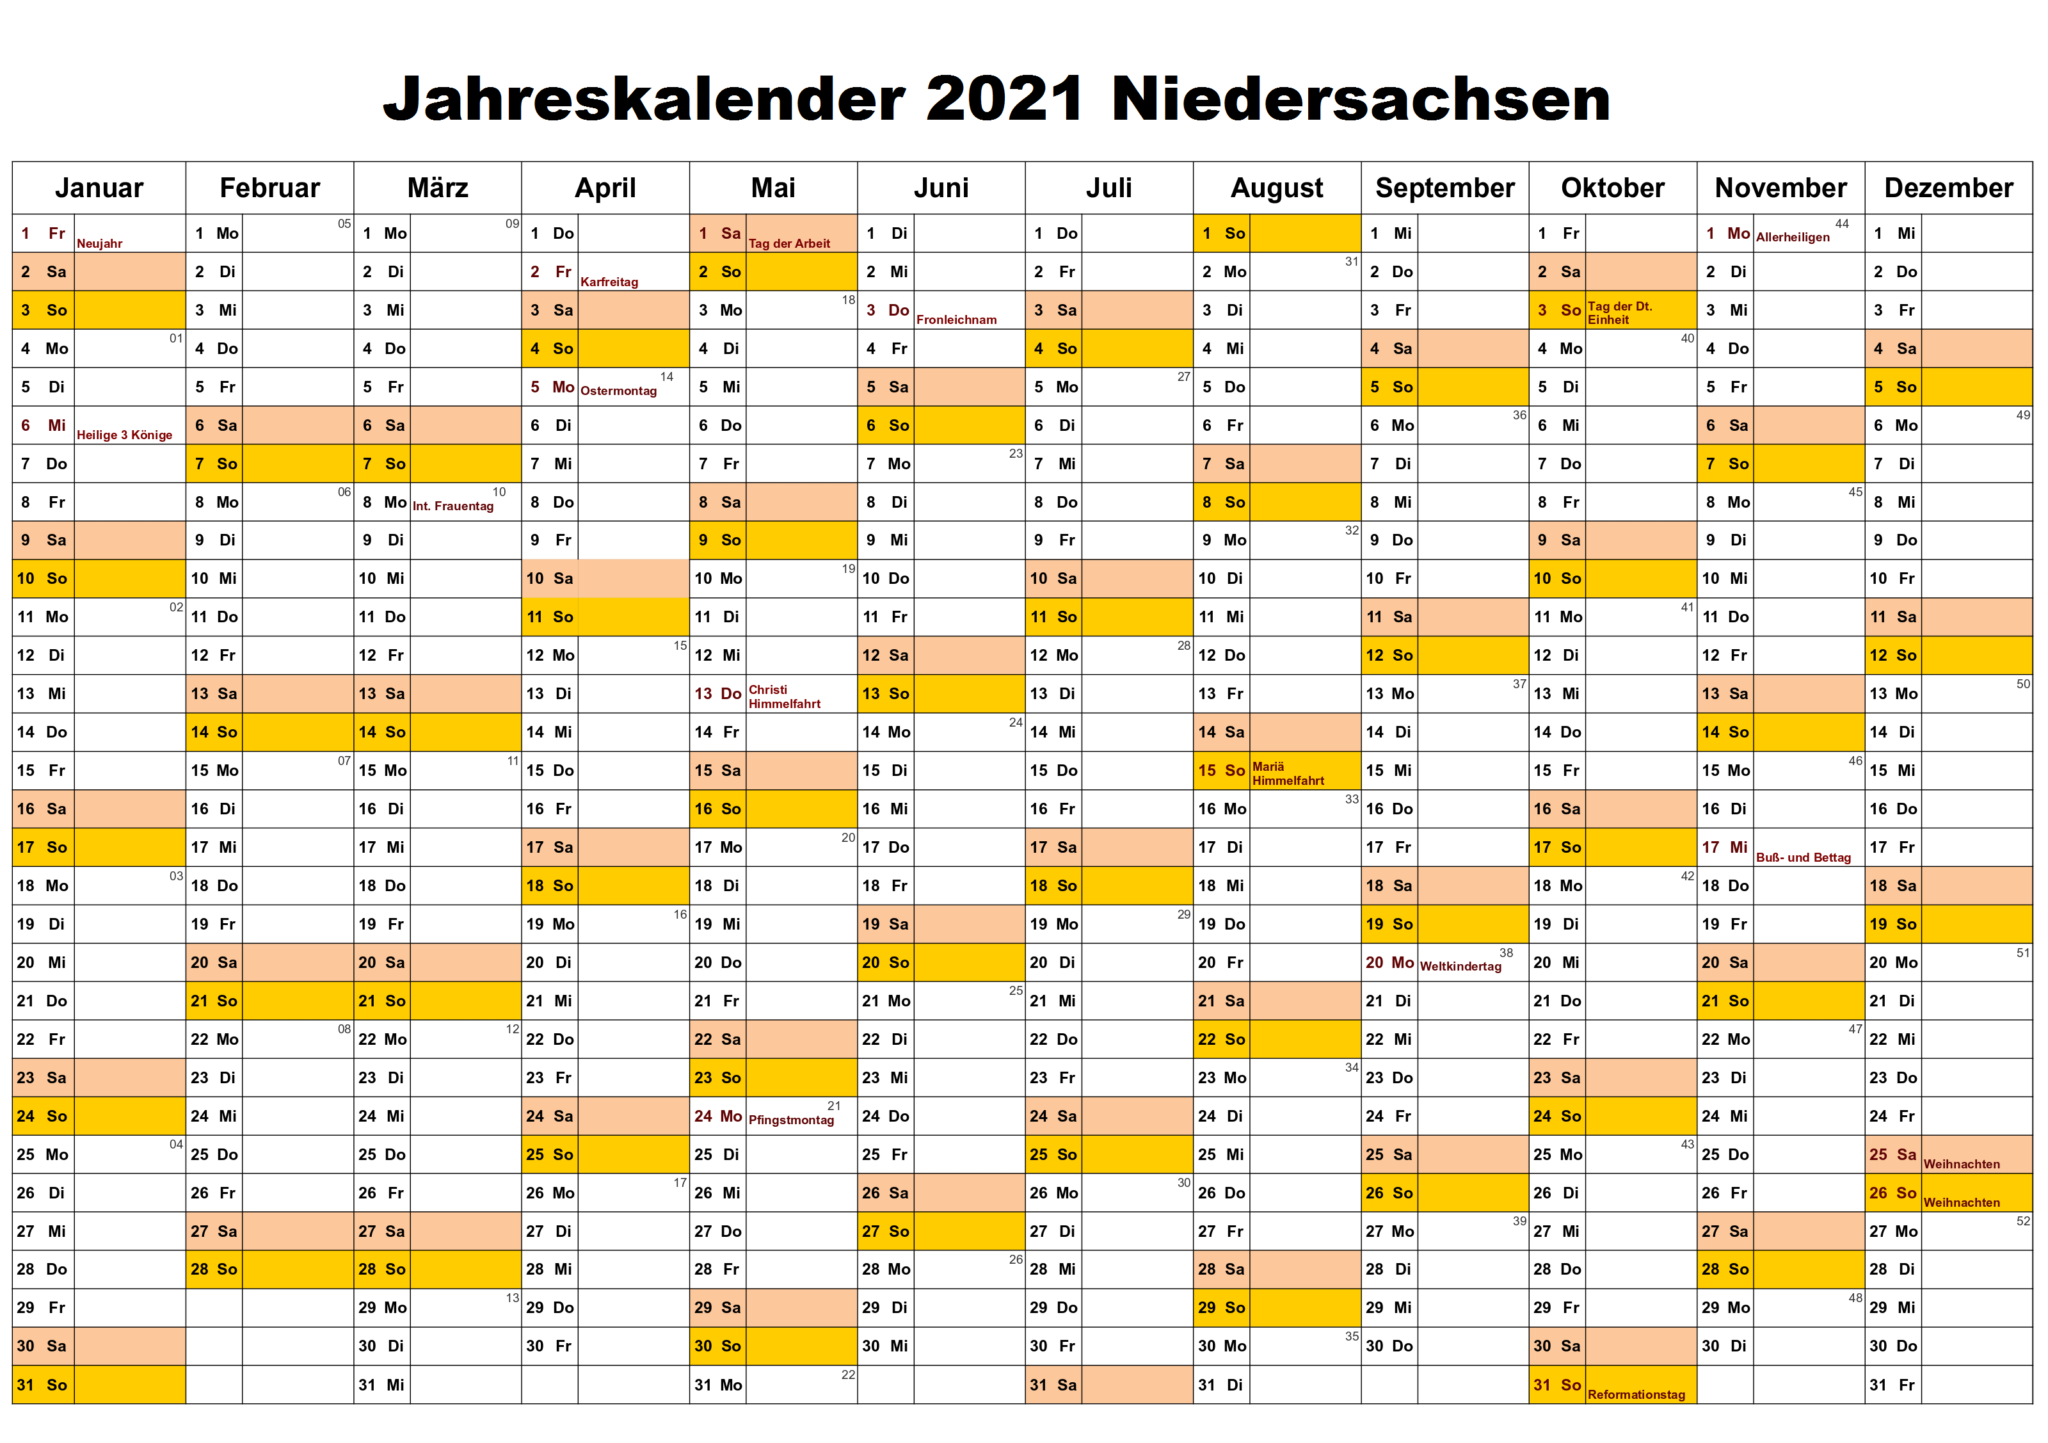 Jahreskalender 2021 Niedersachsen PDF | The Beste Kalender